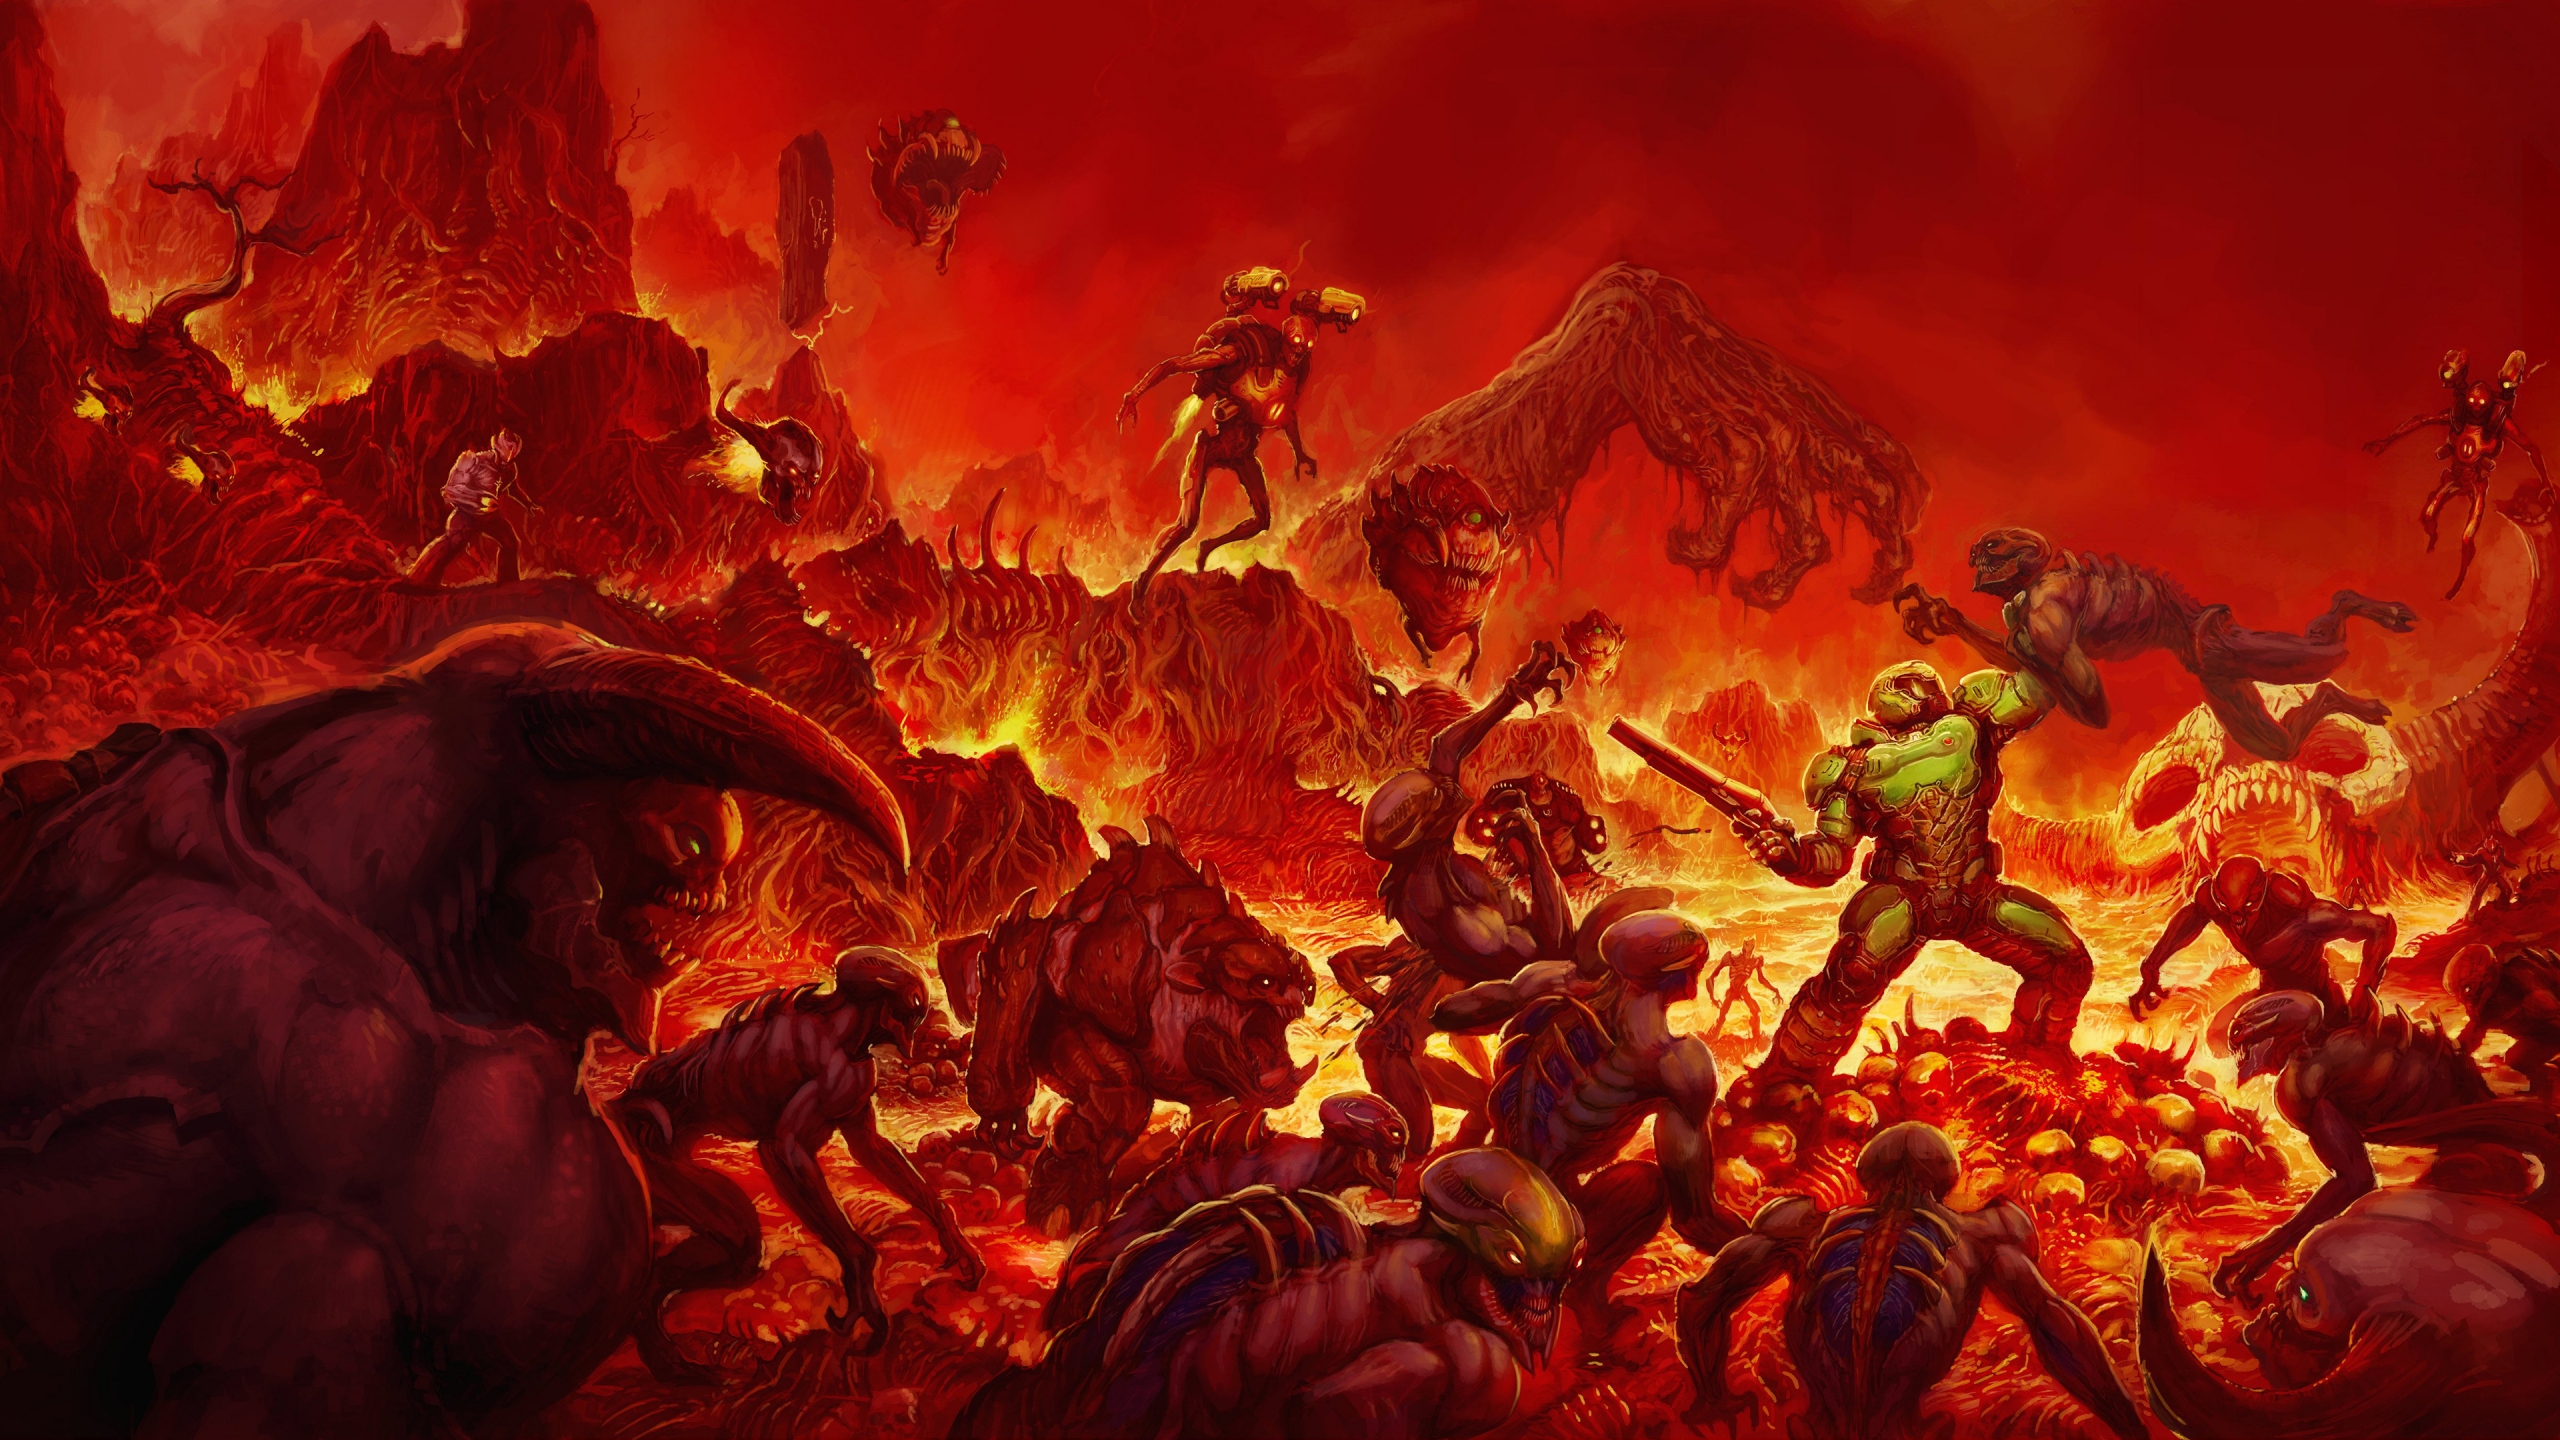 Doom 2016 Doom Slayer Video Games Hell Video Game Art 2560x1440